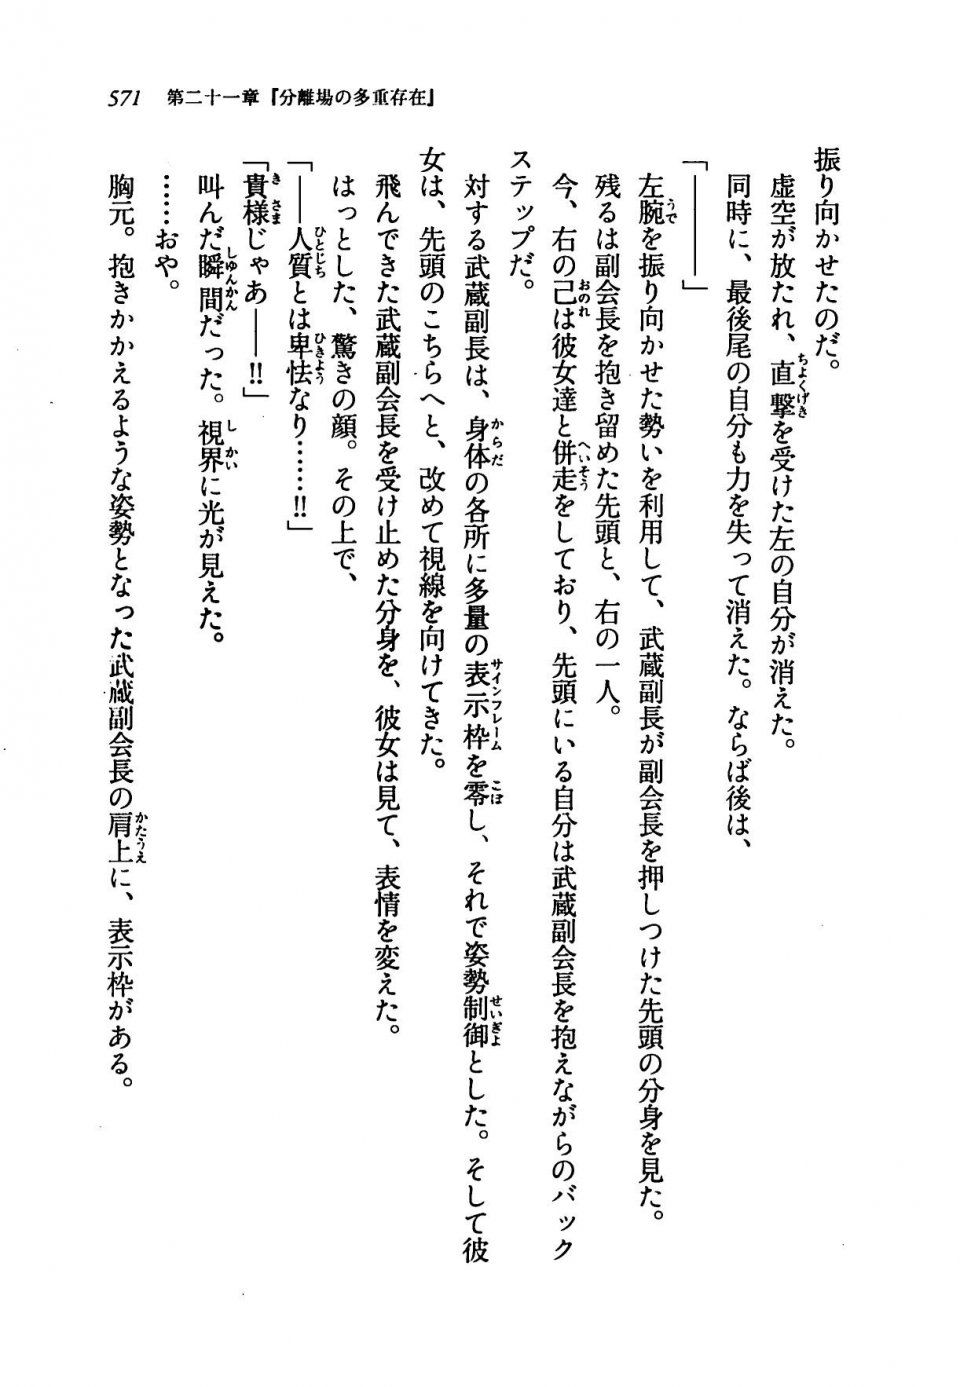 Kyoukai Senjou no Horizon LN Vol 19(8A) - Photo #571